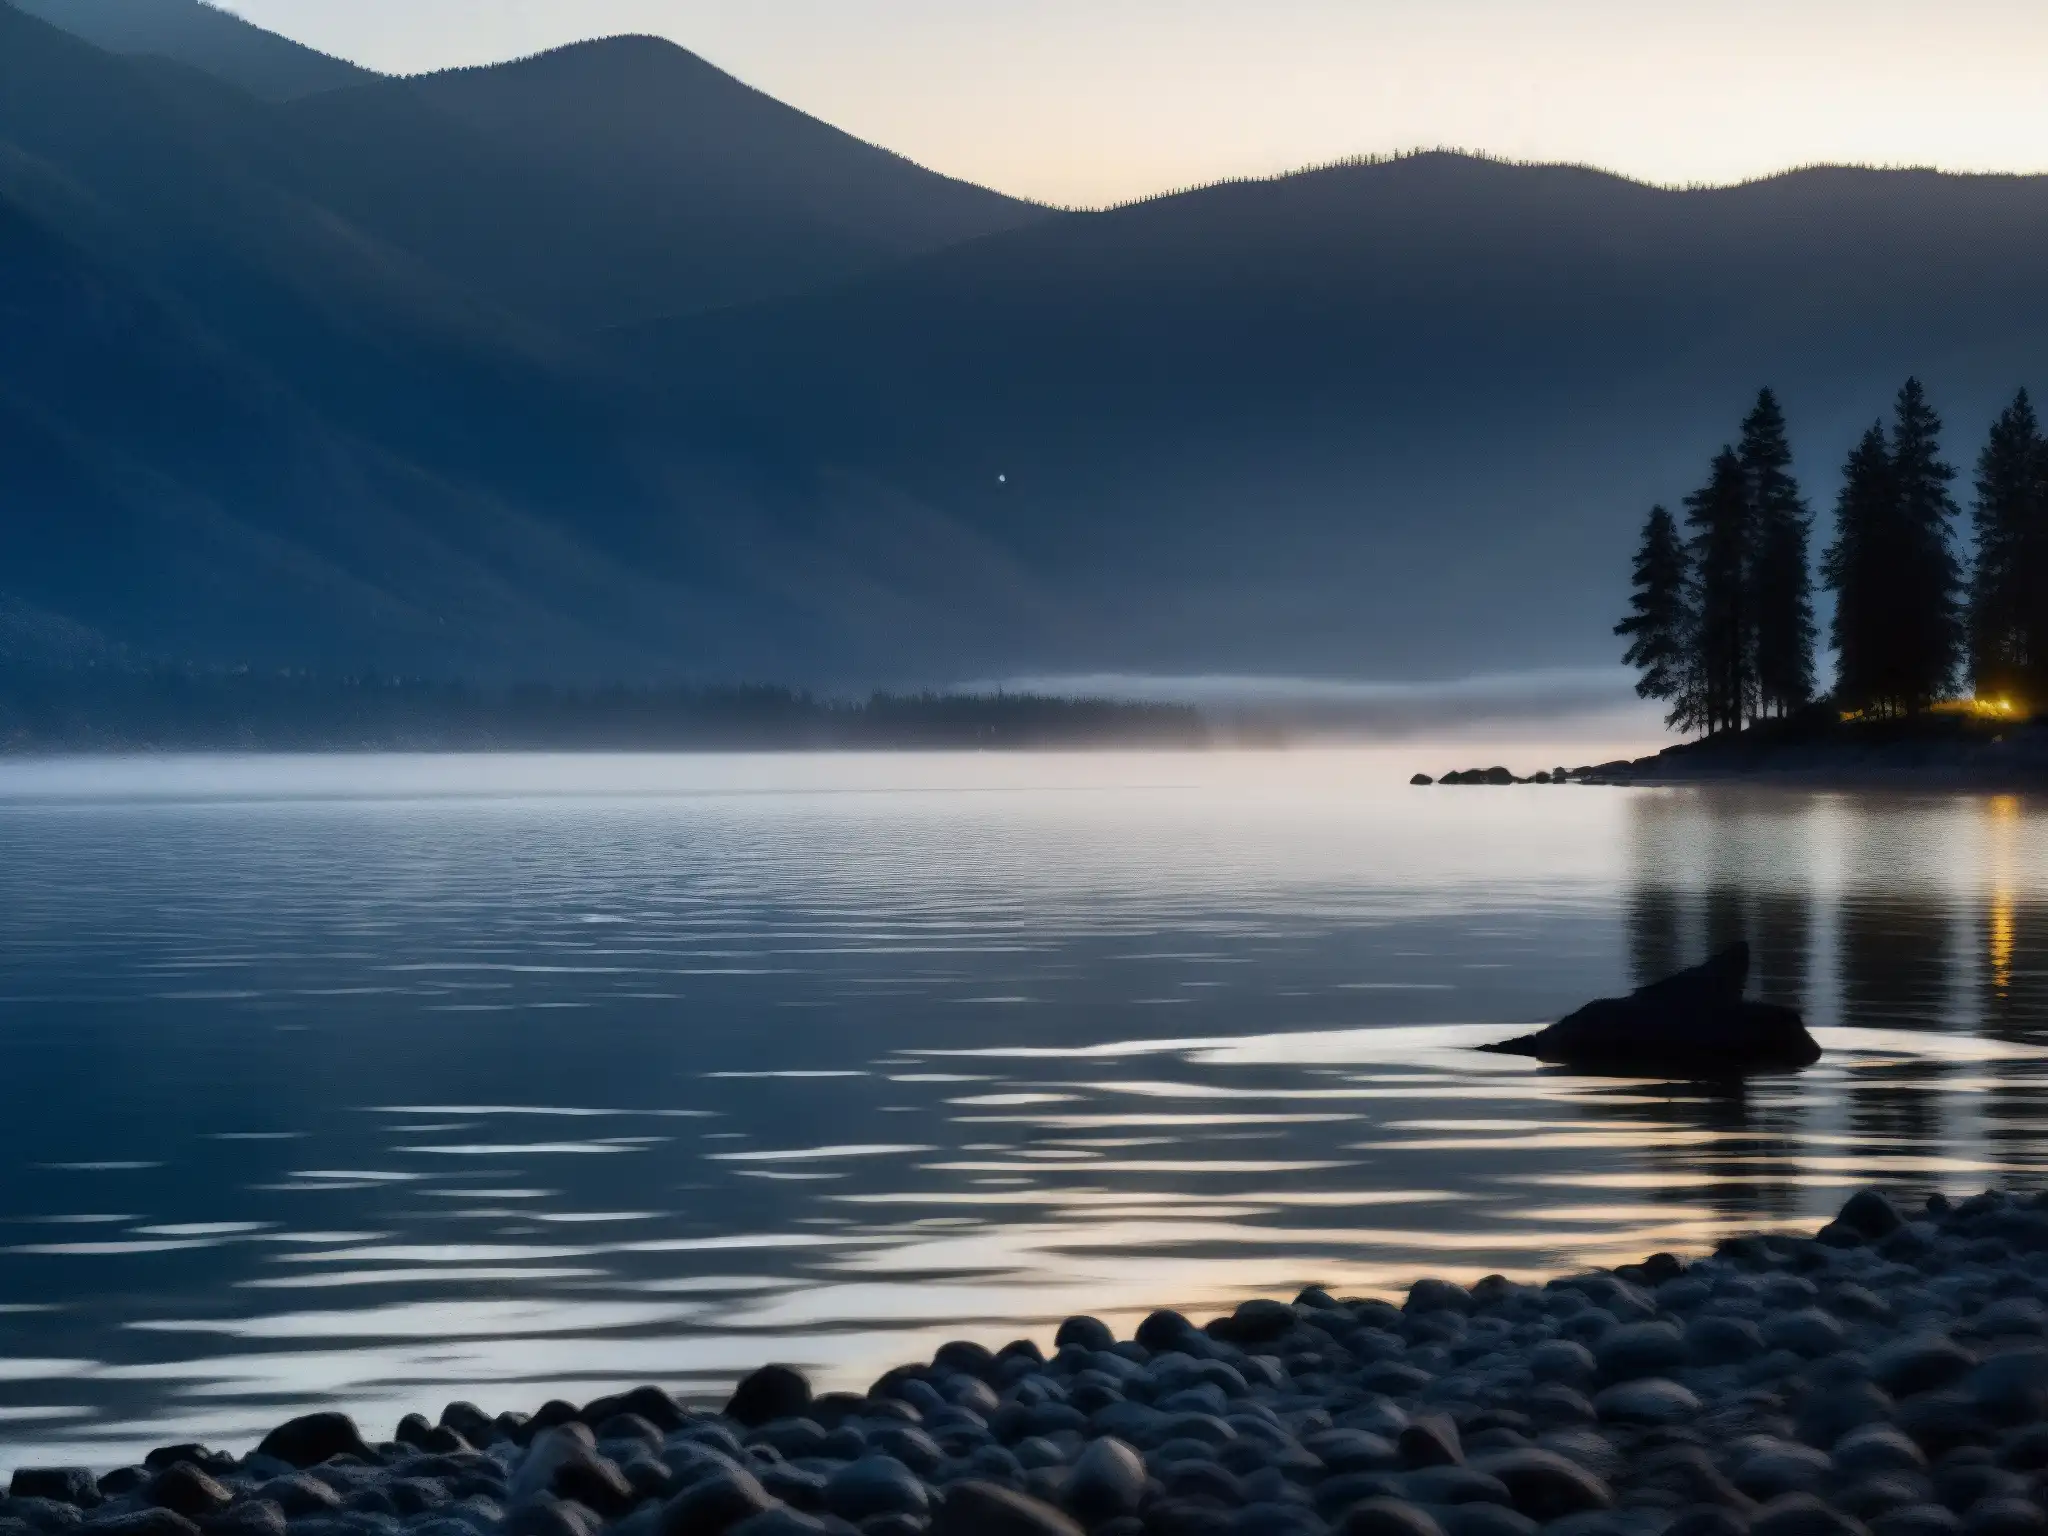 Un misterioso Okanagan Lake al anochecer, con una criatura acechando bajo el agua, creando una atmósfera enigmática